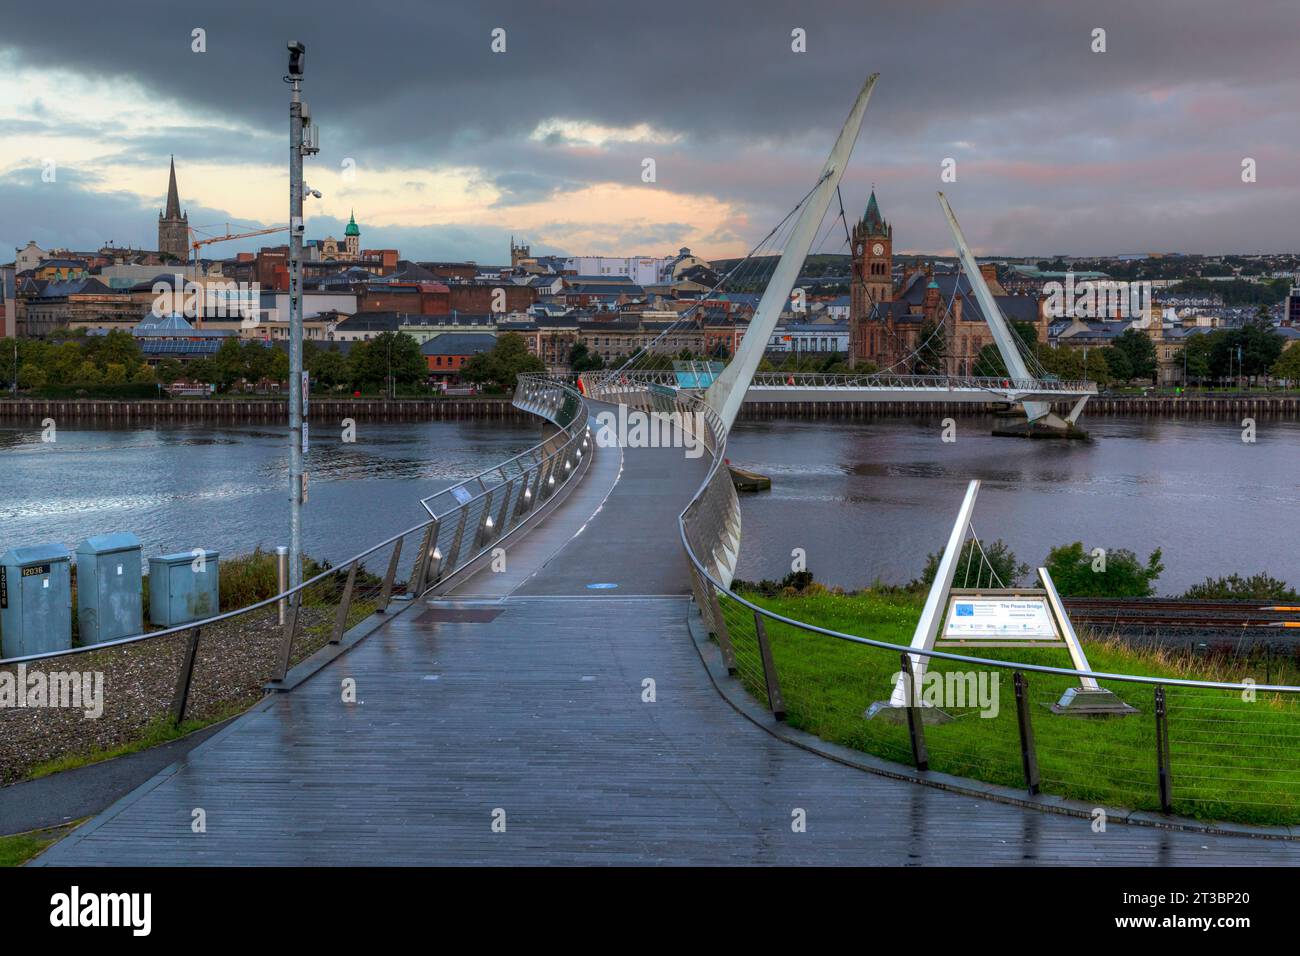 Die Friedensbrücke in Derry, Nordirland, ist ein Symbol für Hoffnung und Versöhnung und verbindet zwei Gemeinschaften, die einst durch Konflikte geteilt wurden. Stockfoto